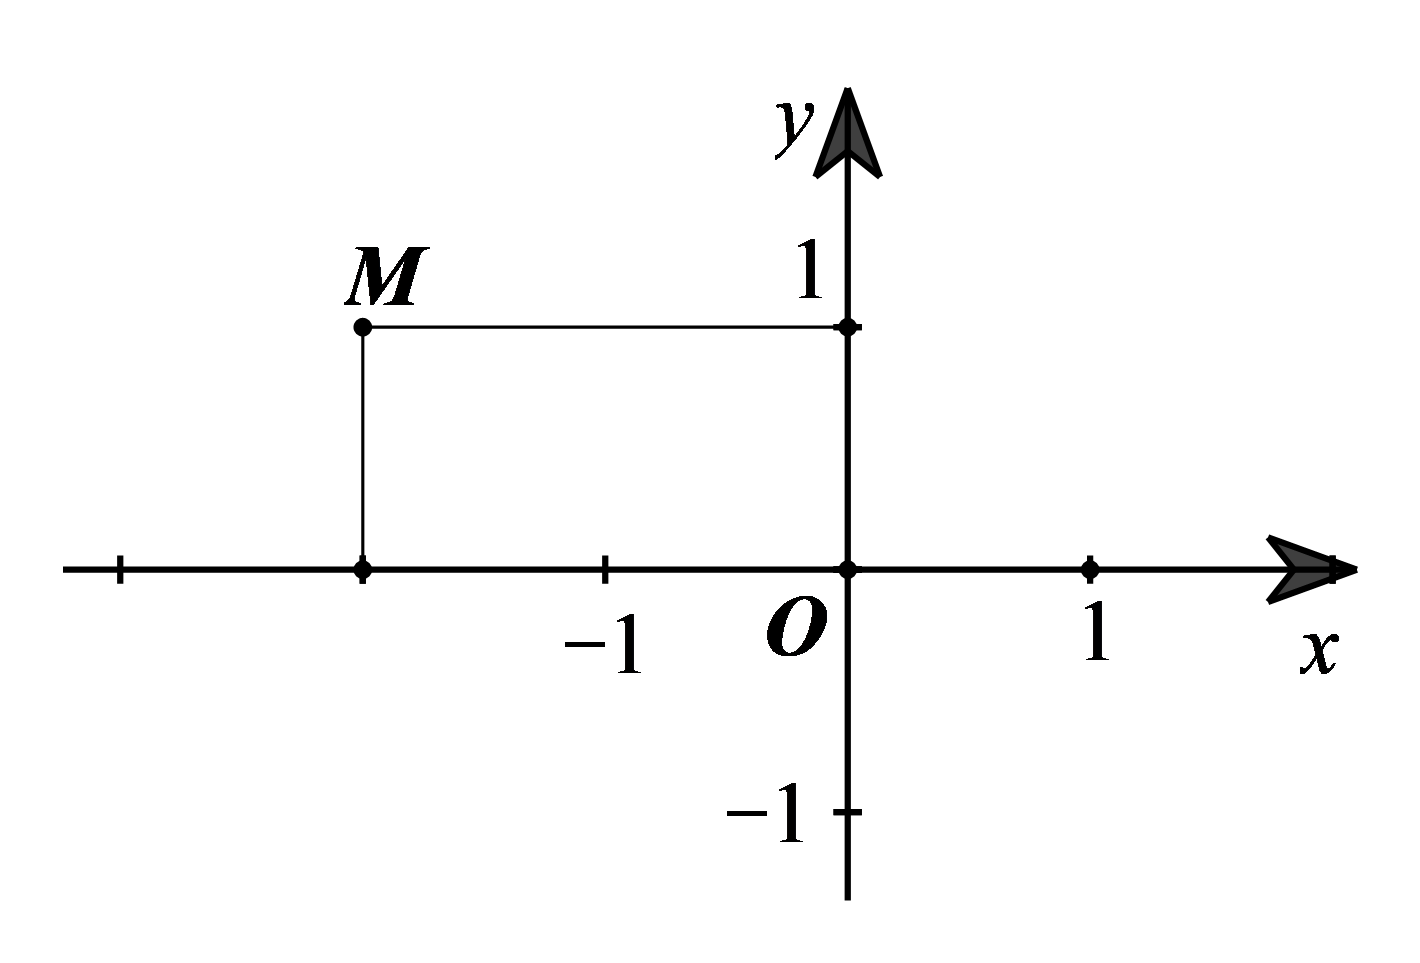 Điểm M trên mặt phẳng tọa độ Oxy (hình bên) có tọa độ là (ảnh 1)